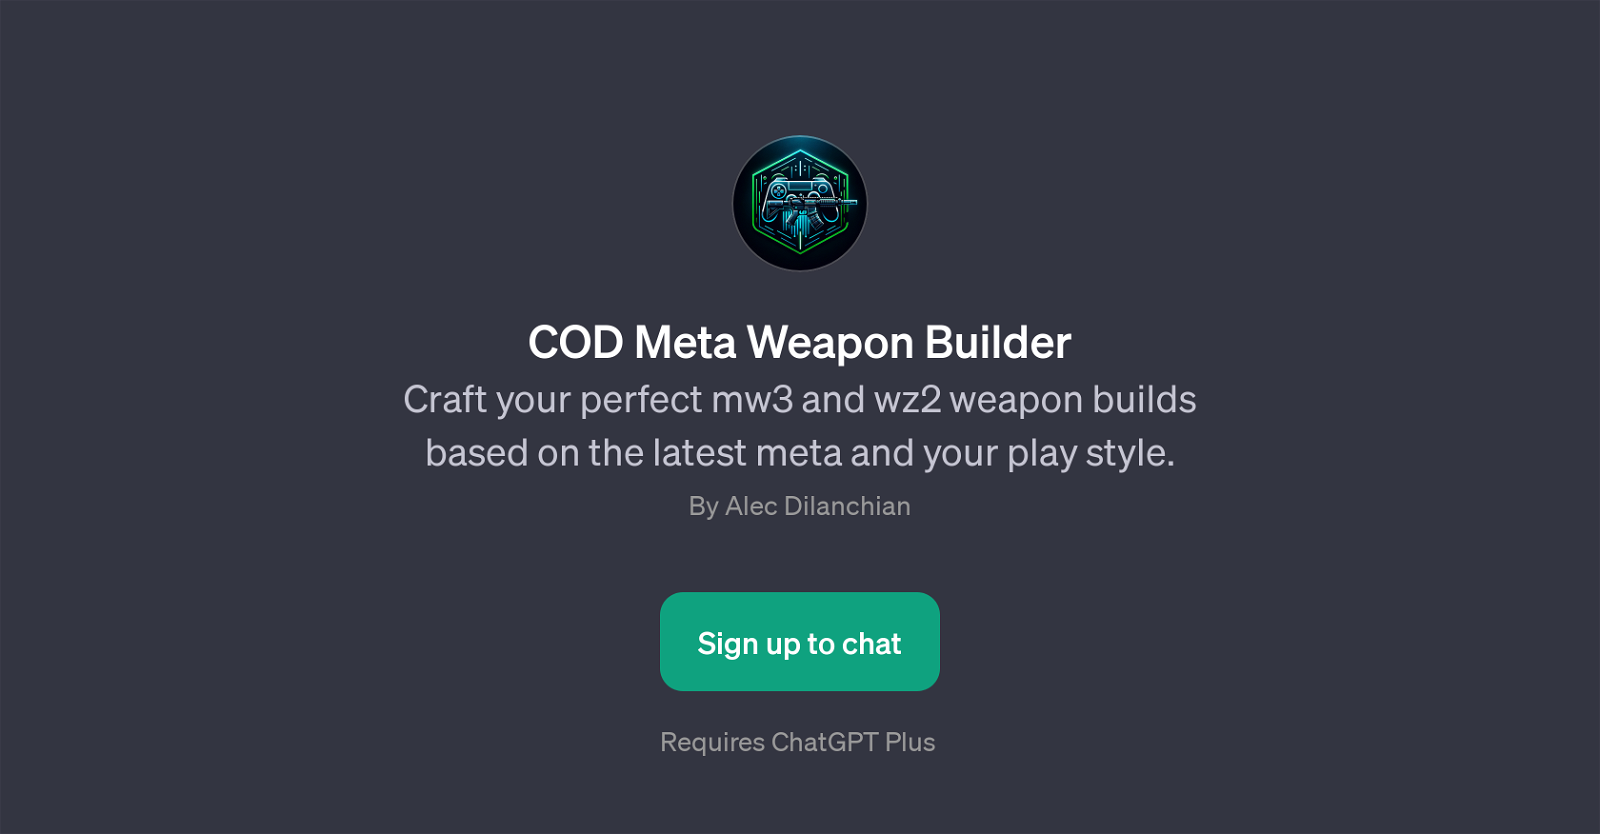 COD Meta Weapon Builder website